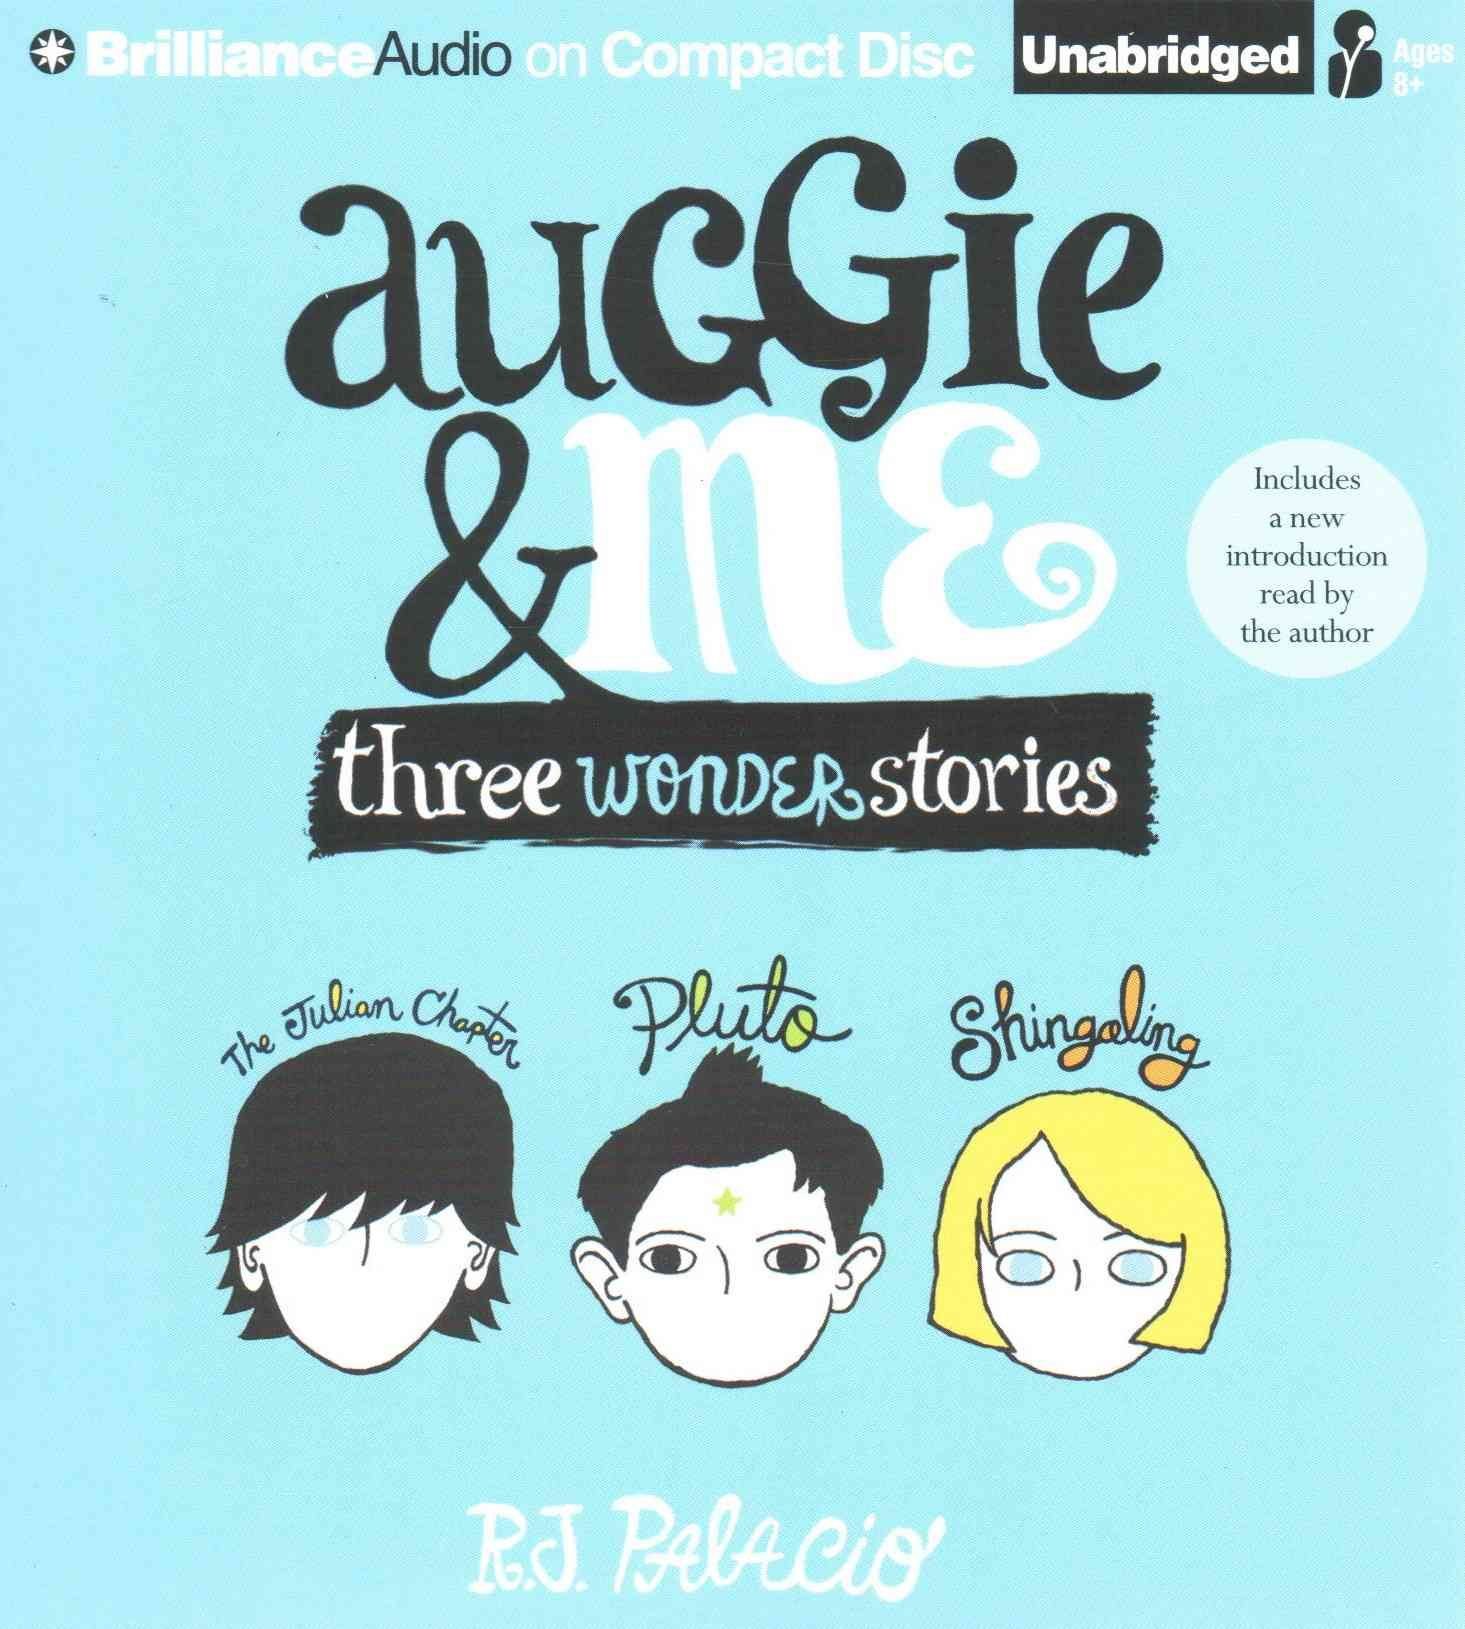 Auggie & Me: Three Wonder Stories: R. J. Palacio